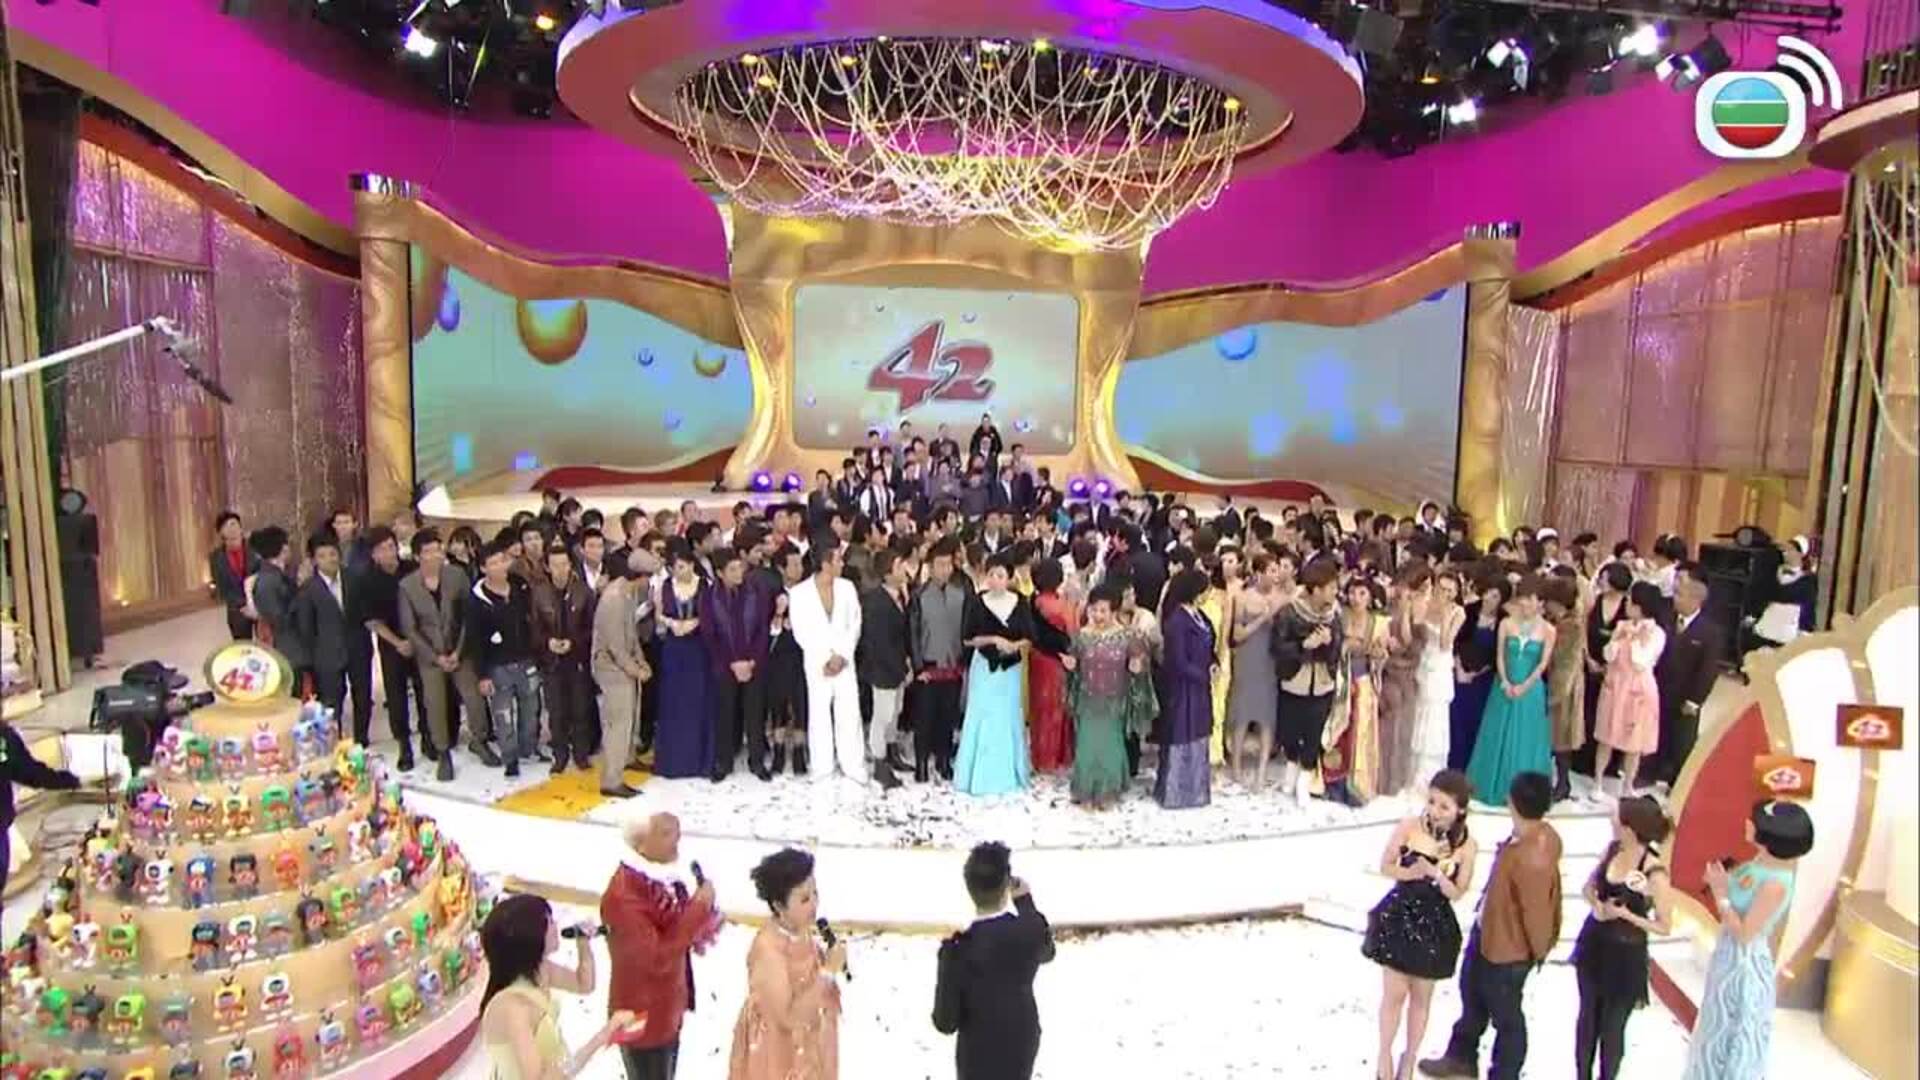 歷年台慶經典回顧-TVB Anniversary Gala Show Classics